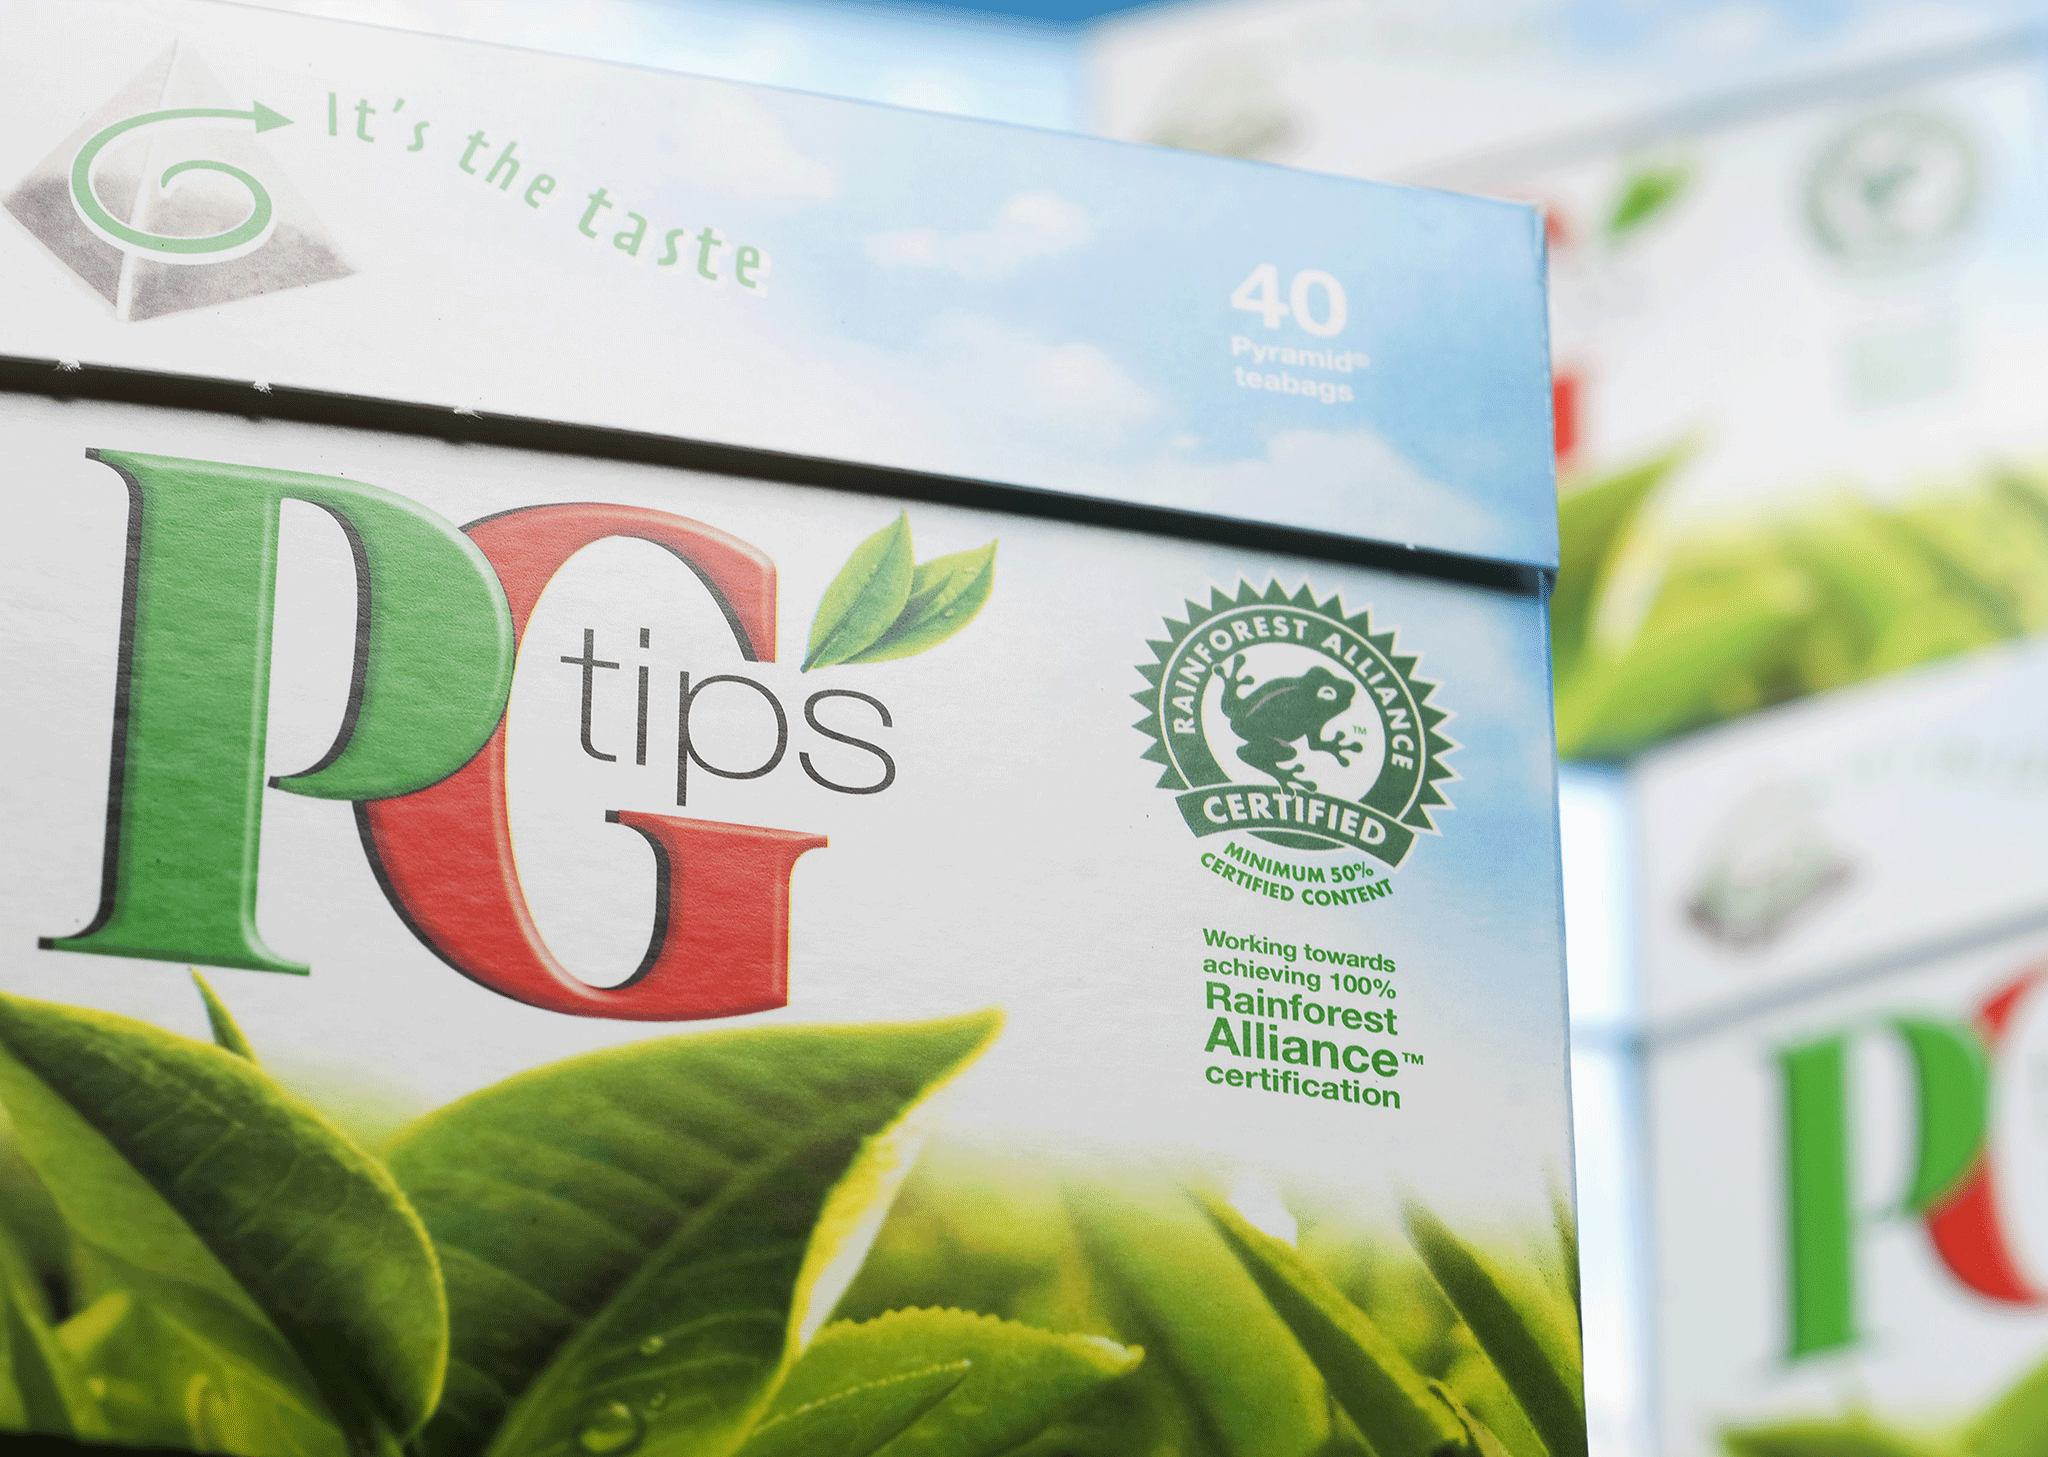 PG Tips is vanishing from the shelves - but Unilever is doing OK